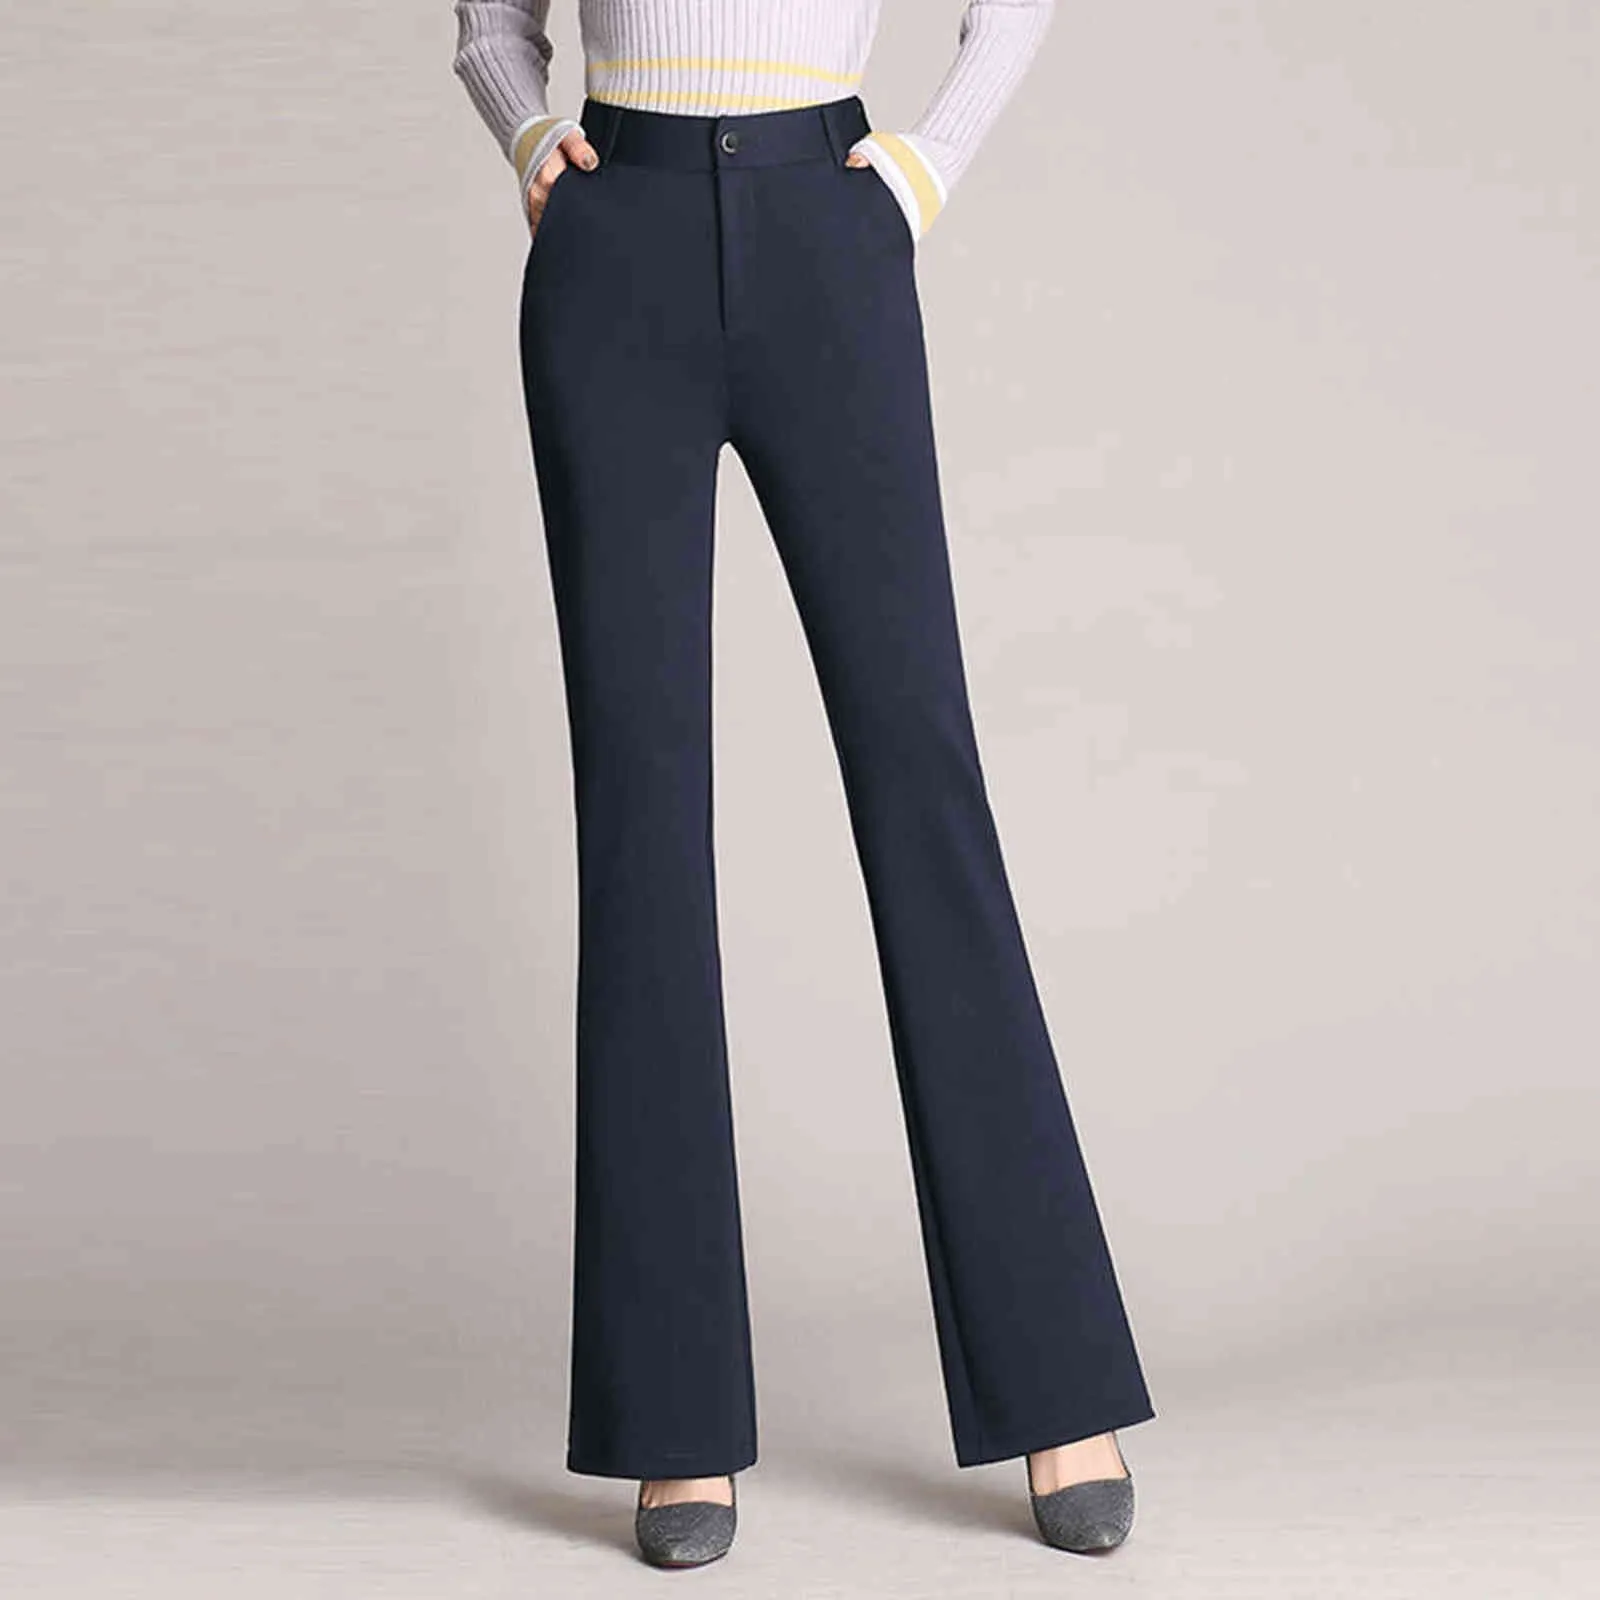 Klasik Vintage Yüksek Bel Flare Pantolon Kadınlar Için Streç Suit Kumaş Rahat Pantolon Ofis Bayan Düz Pantolon Artı Boyutu S-4XL Y1124